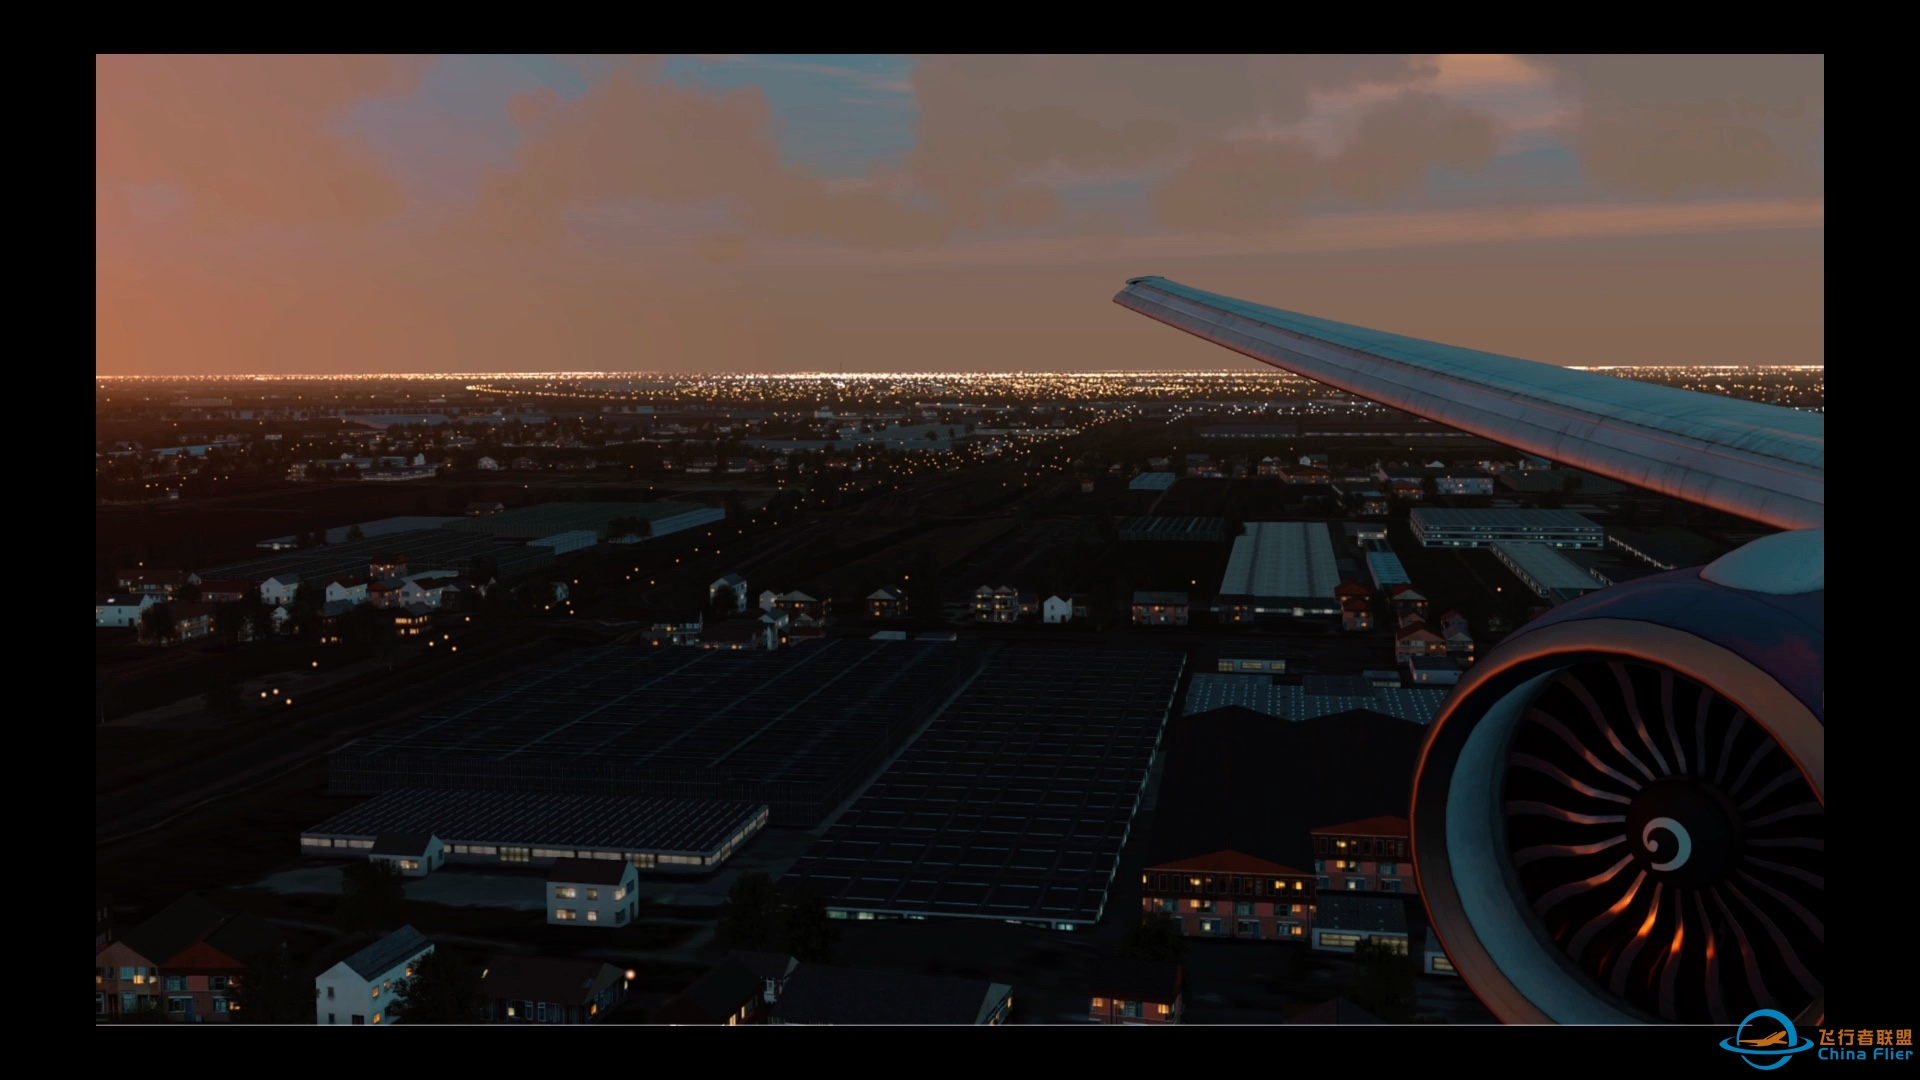 Aerofly Fs2 ：晨昏时刻，British Airways 与您在阿姆斯特丹相遇。-209 